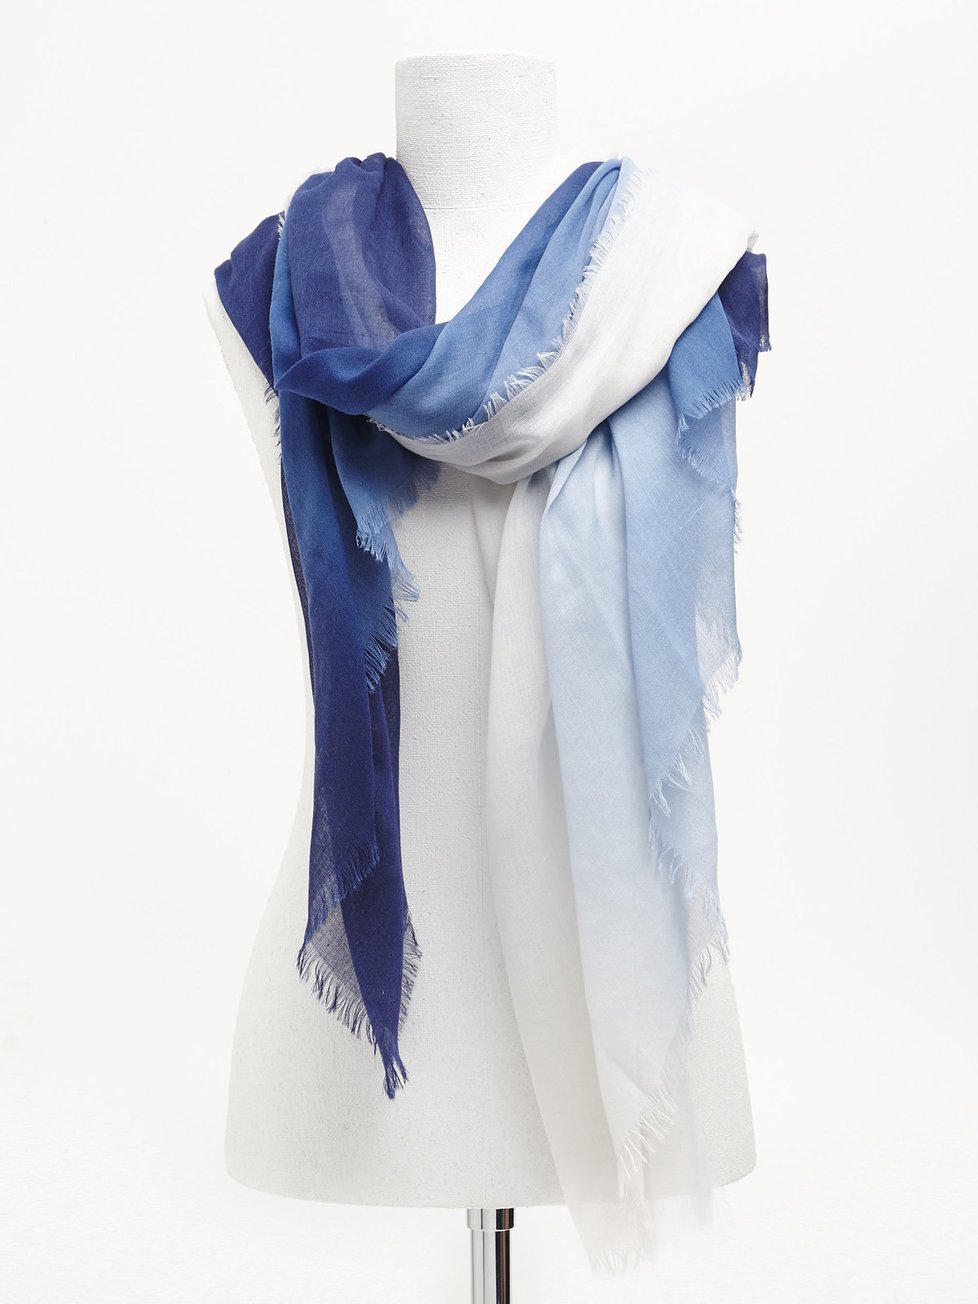 Stylový ombré šátek, Reserved, 249 Kč.